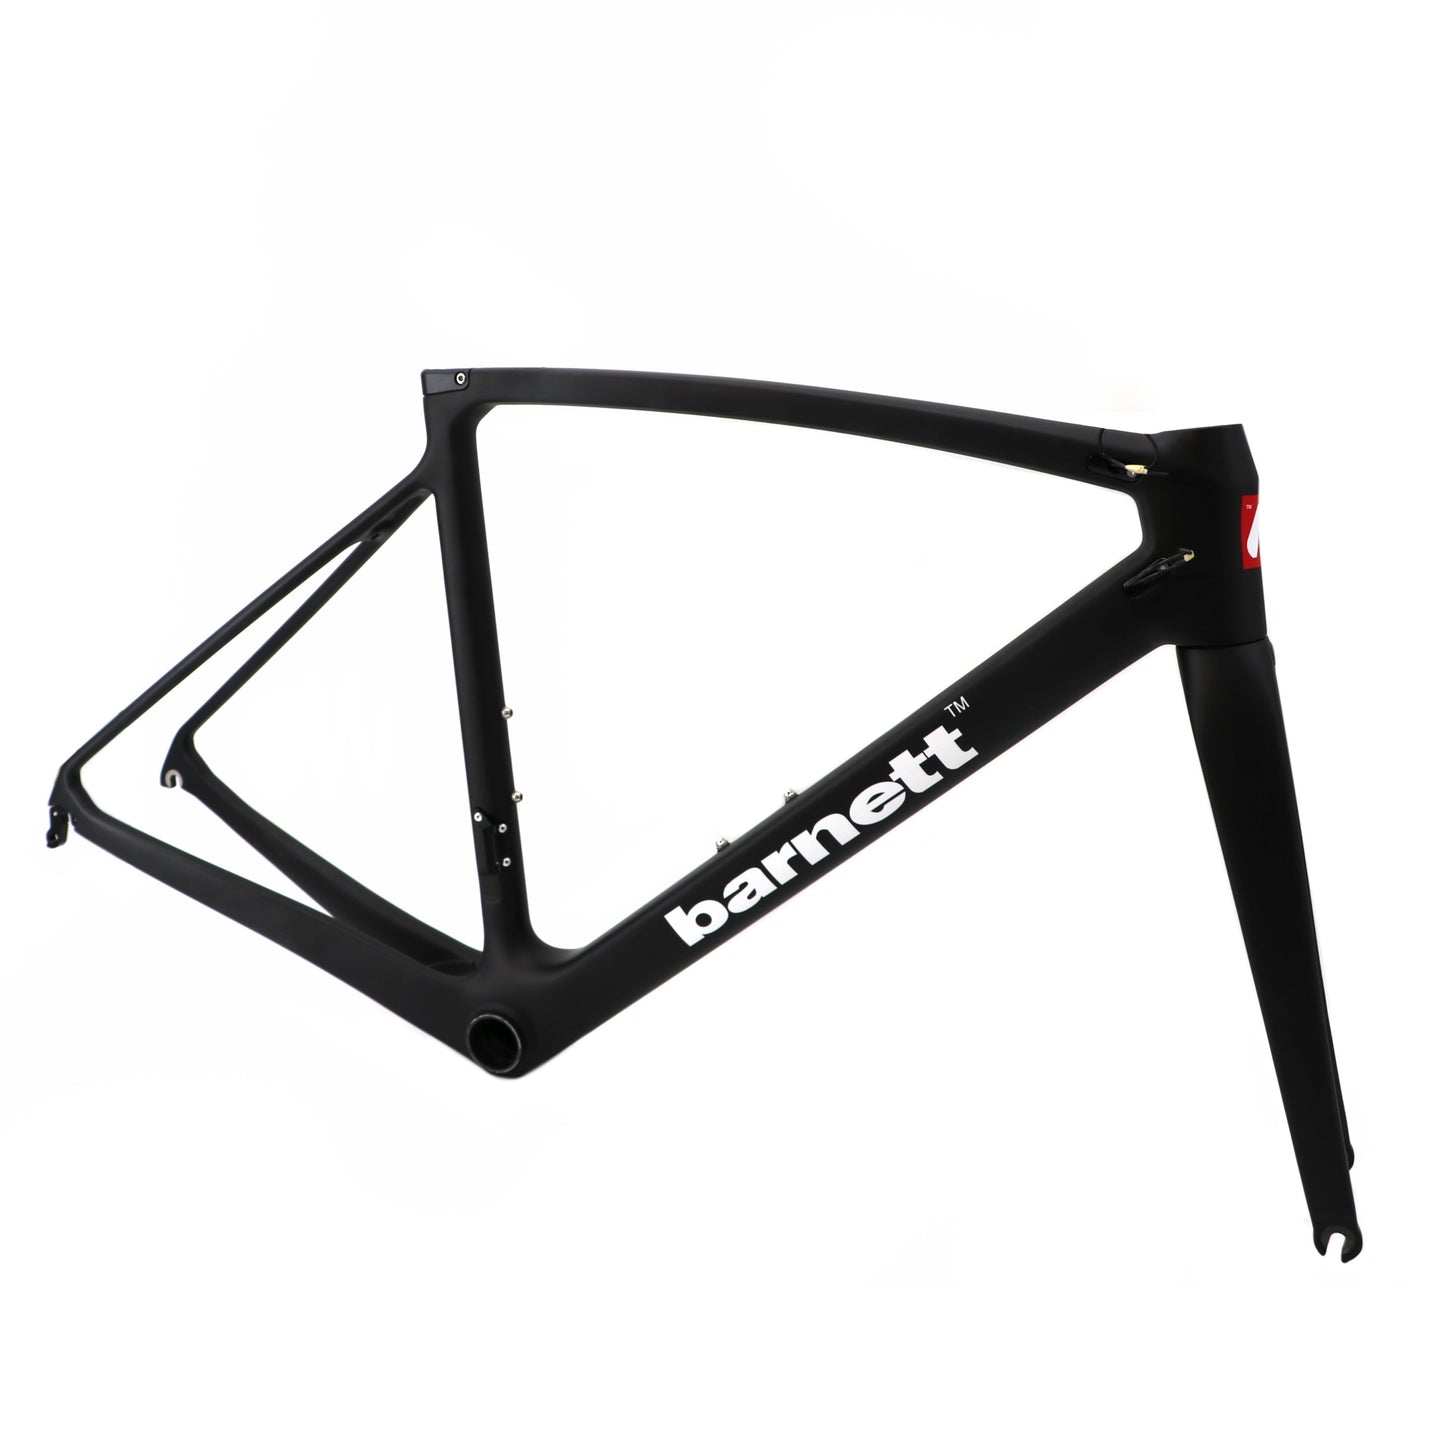 BRC-01 Carbon Bike Frame, White, Black